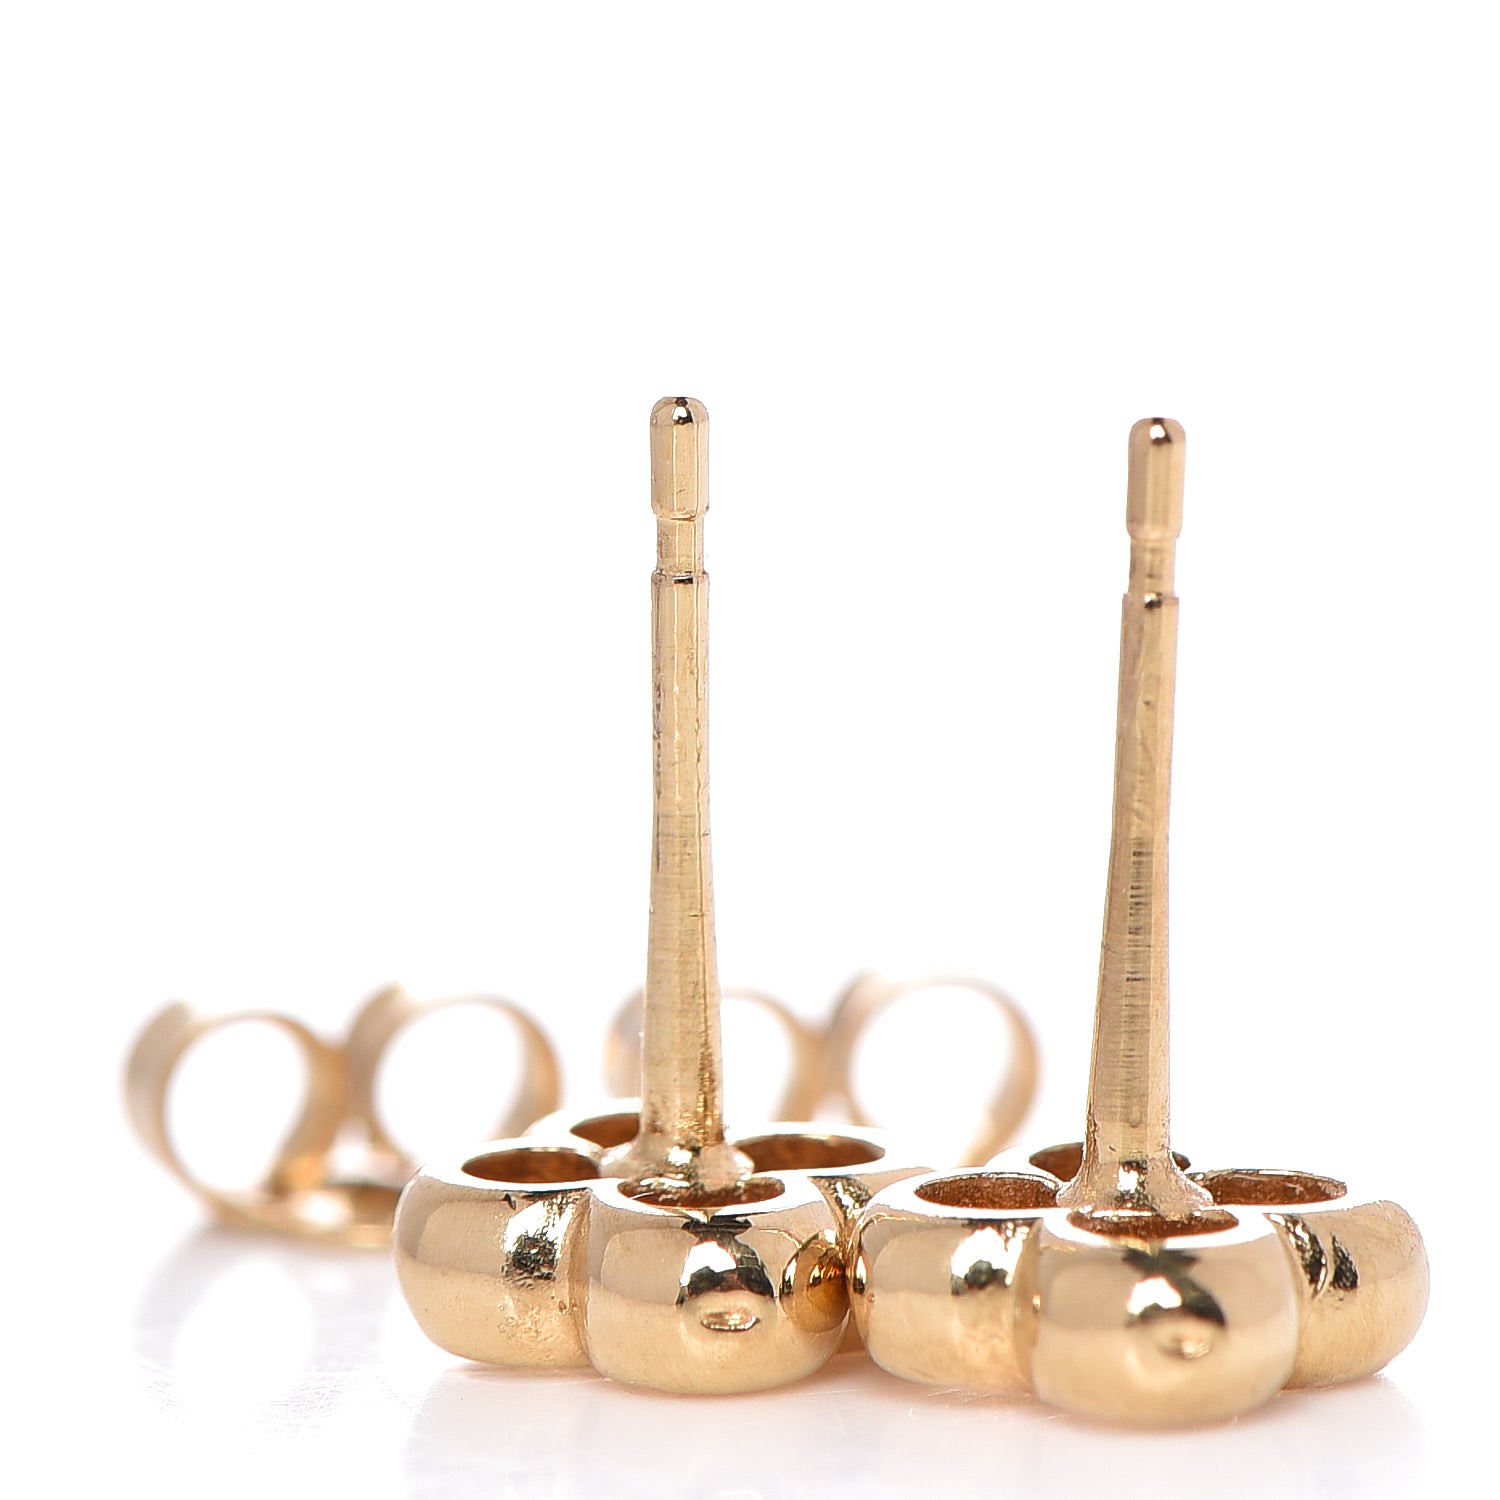 Blooming earrings Louis Vuitton Gold in Metal - 34124051